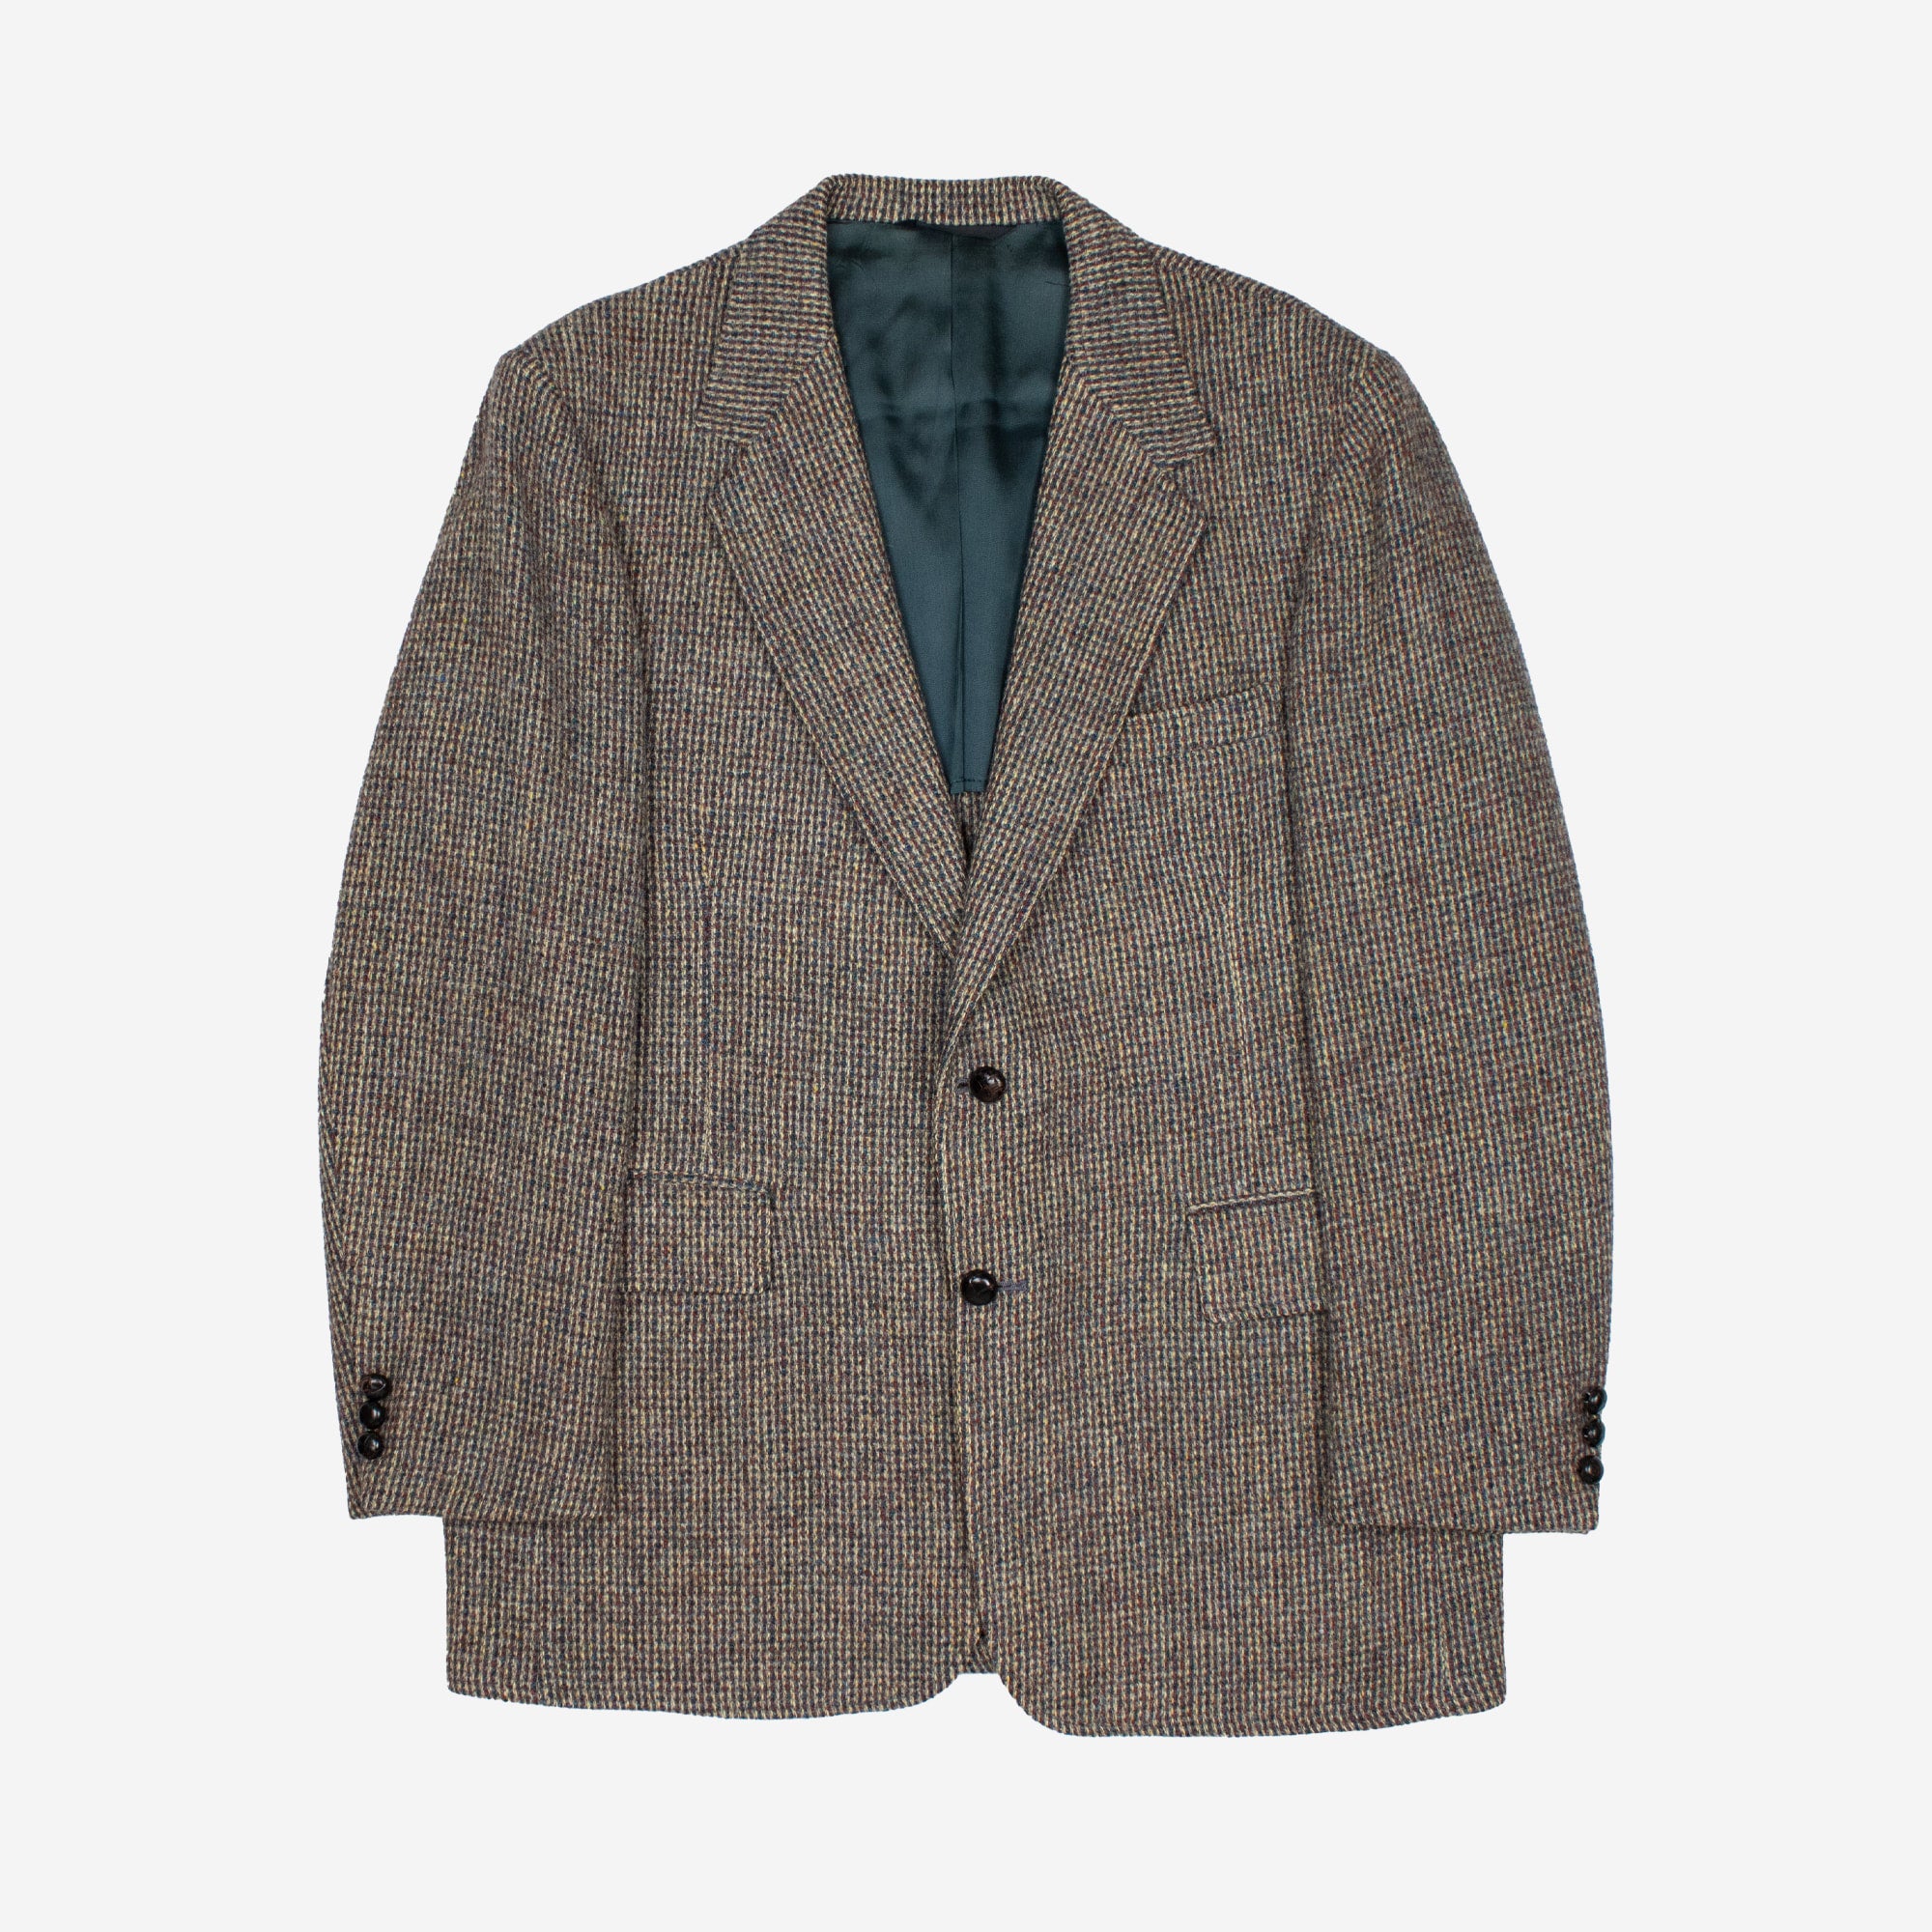 Vintage Harris Tweed 100% Virgin Wool Blazer